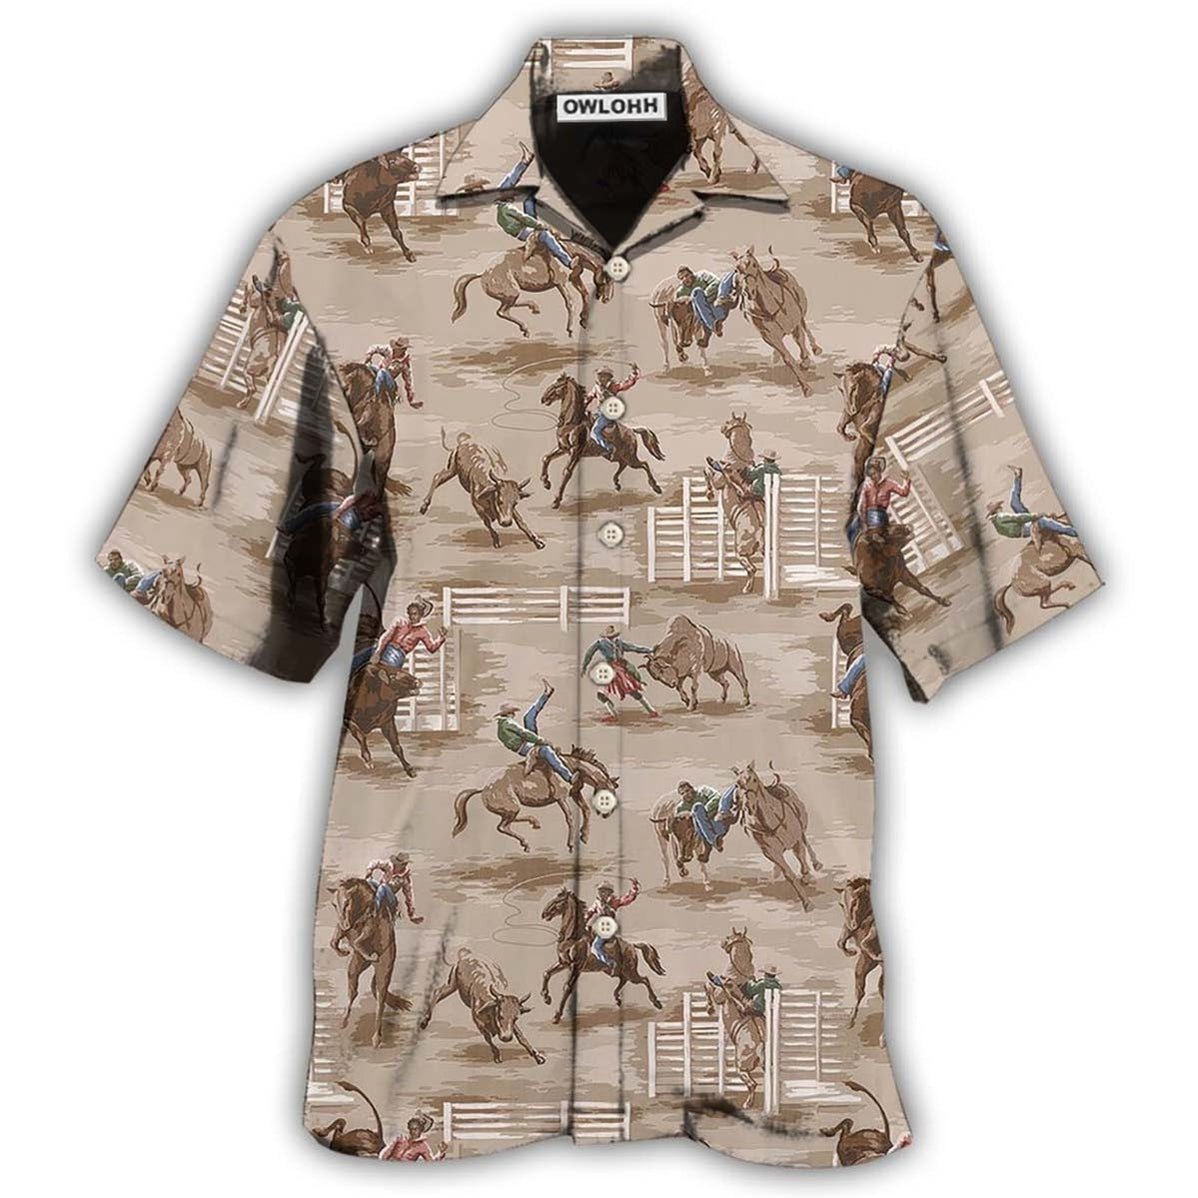 Hawaiian Shirt / Adults / S Horse Style Lover Play - Hawaiian Shirt - Owls Matrix LTD